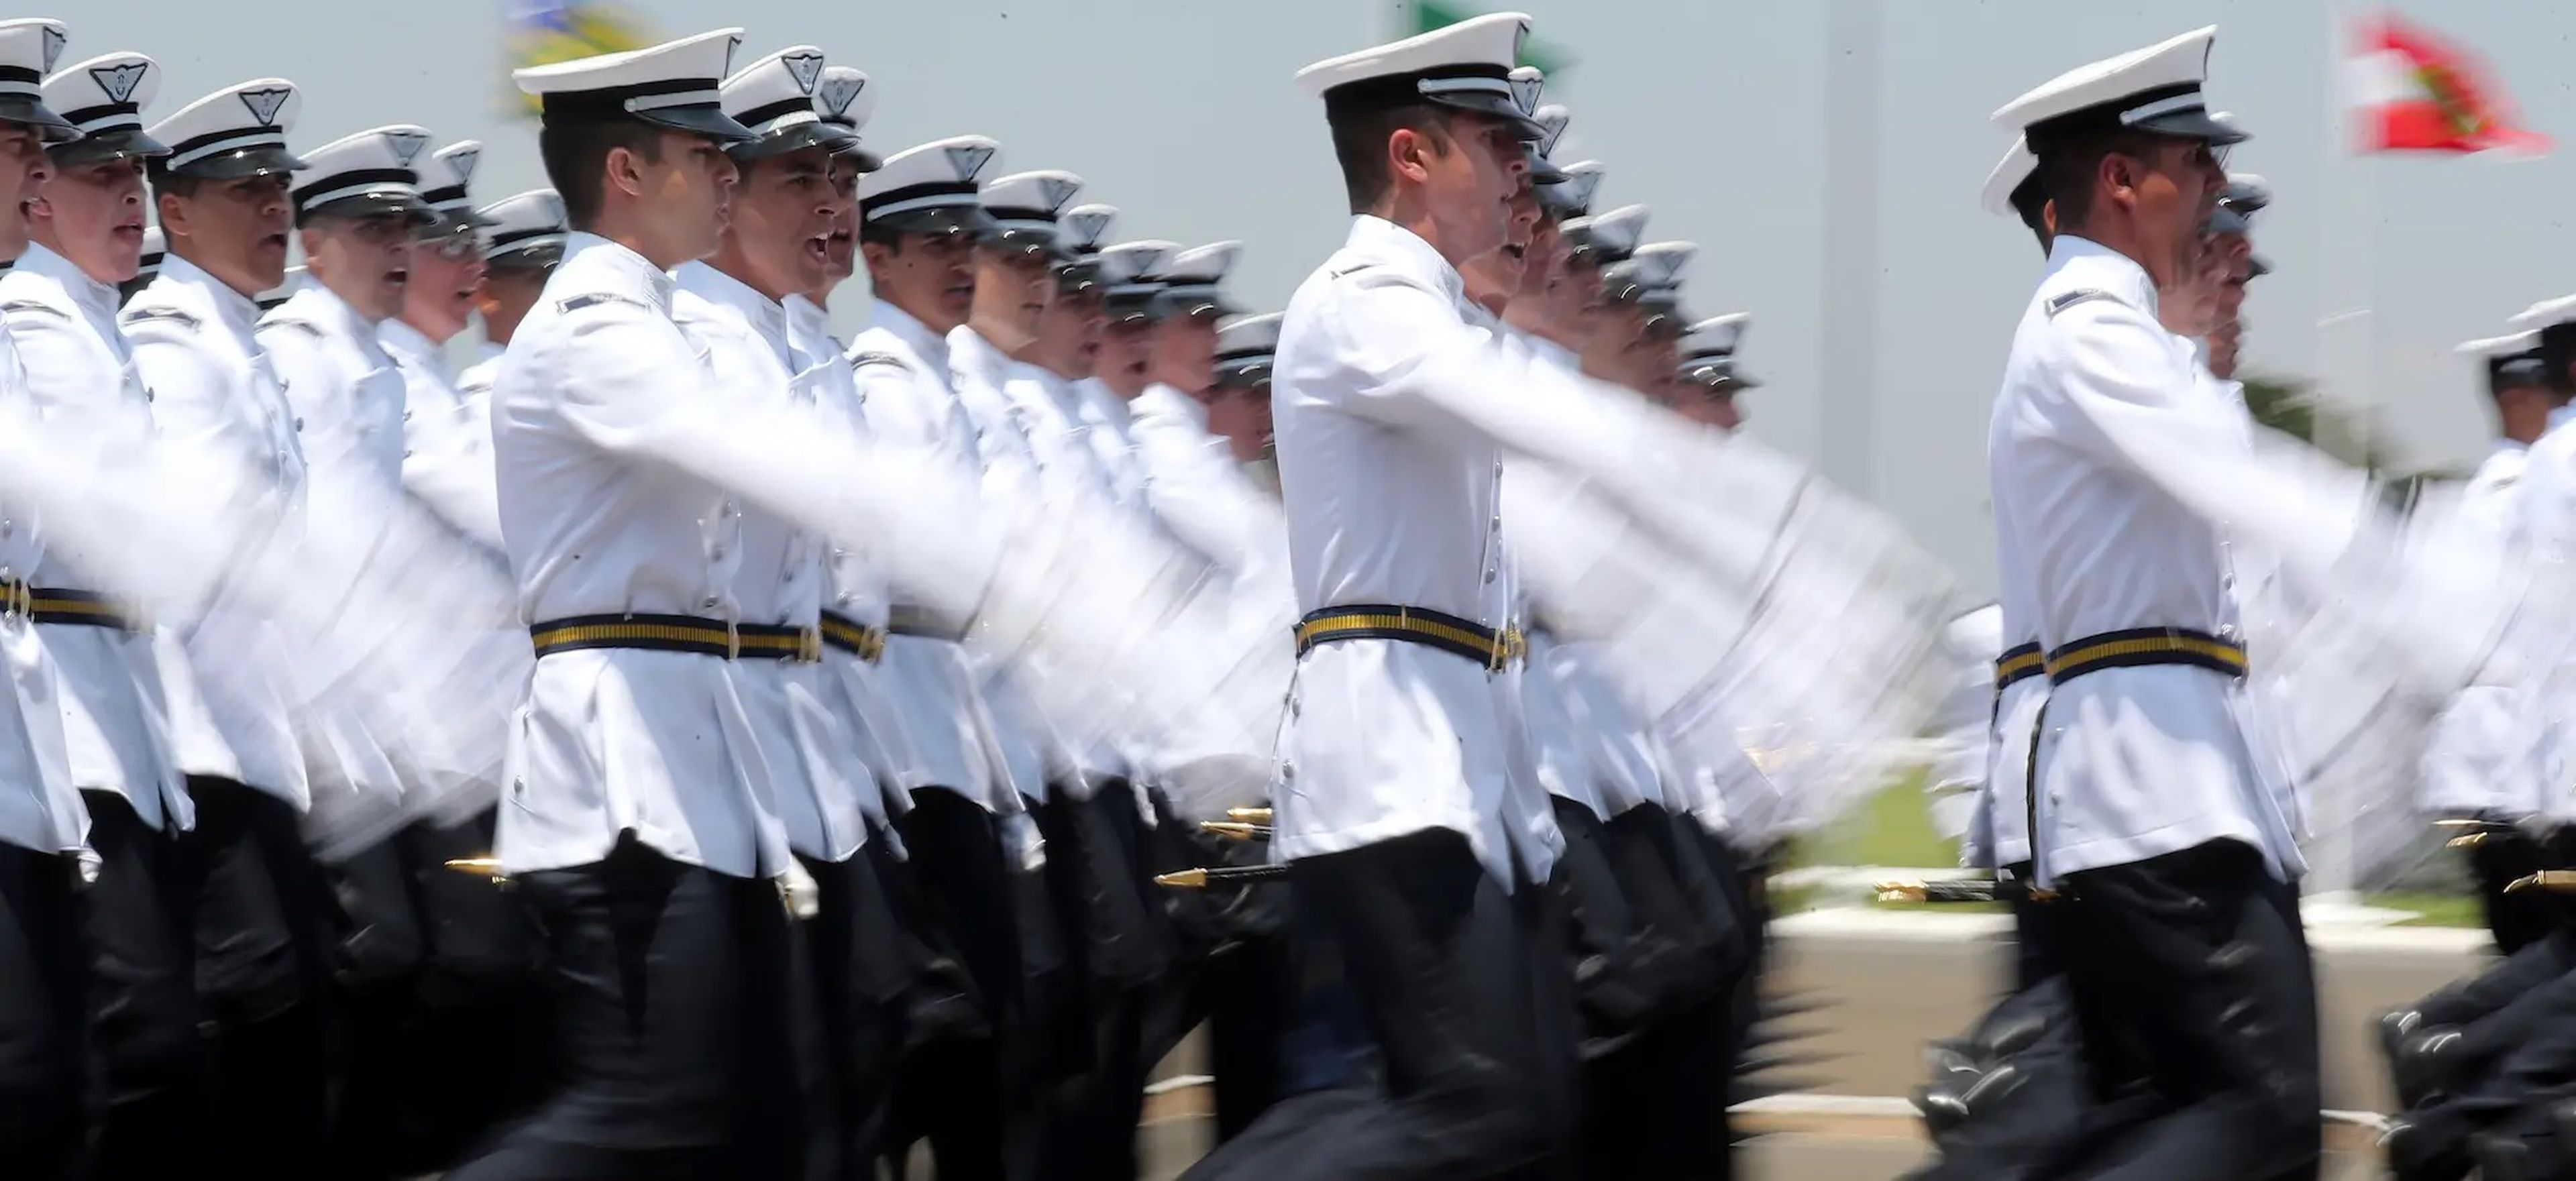 Oficiales desfilan durante su ceremonia de graduación en la Academia de la Fuerza Aérea Brasileña (AFA) en Pirassununga, Brasil.